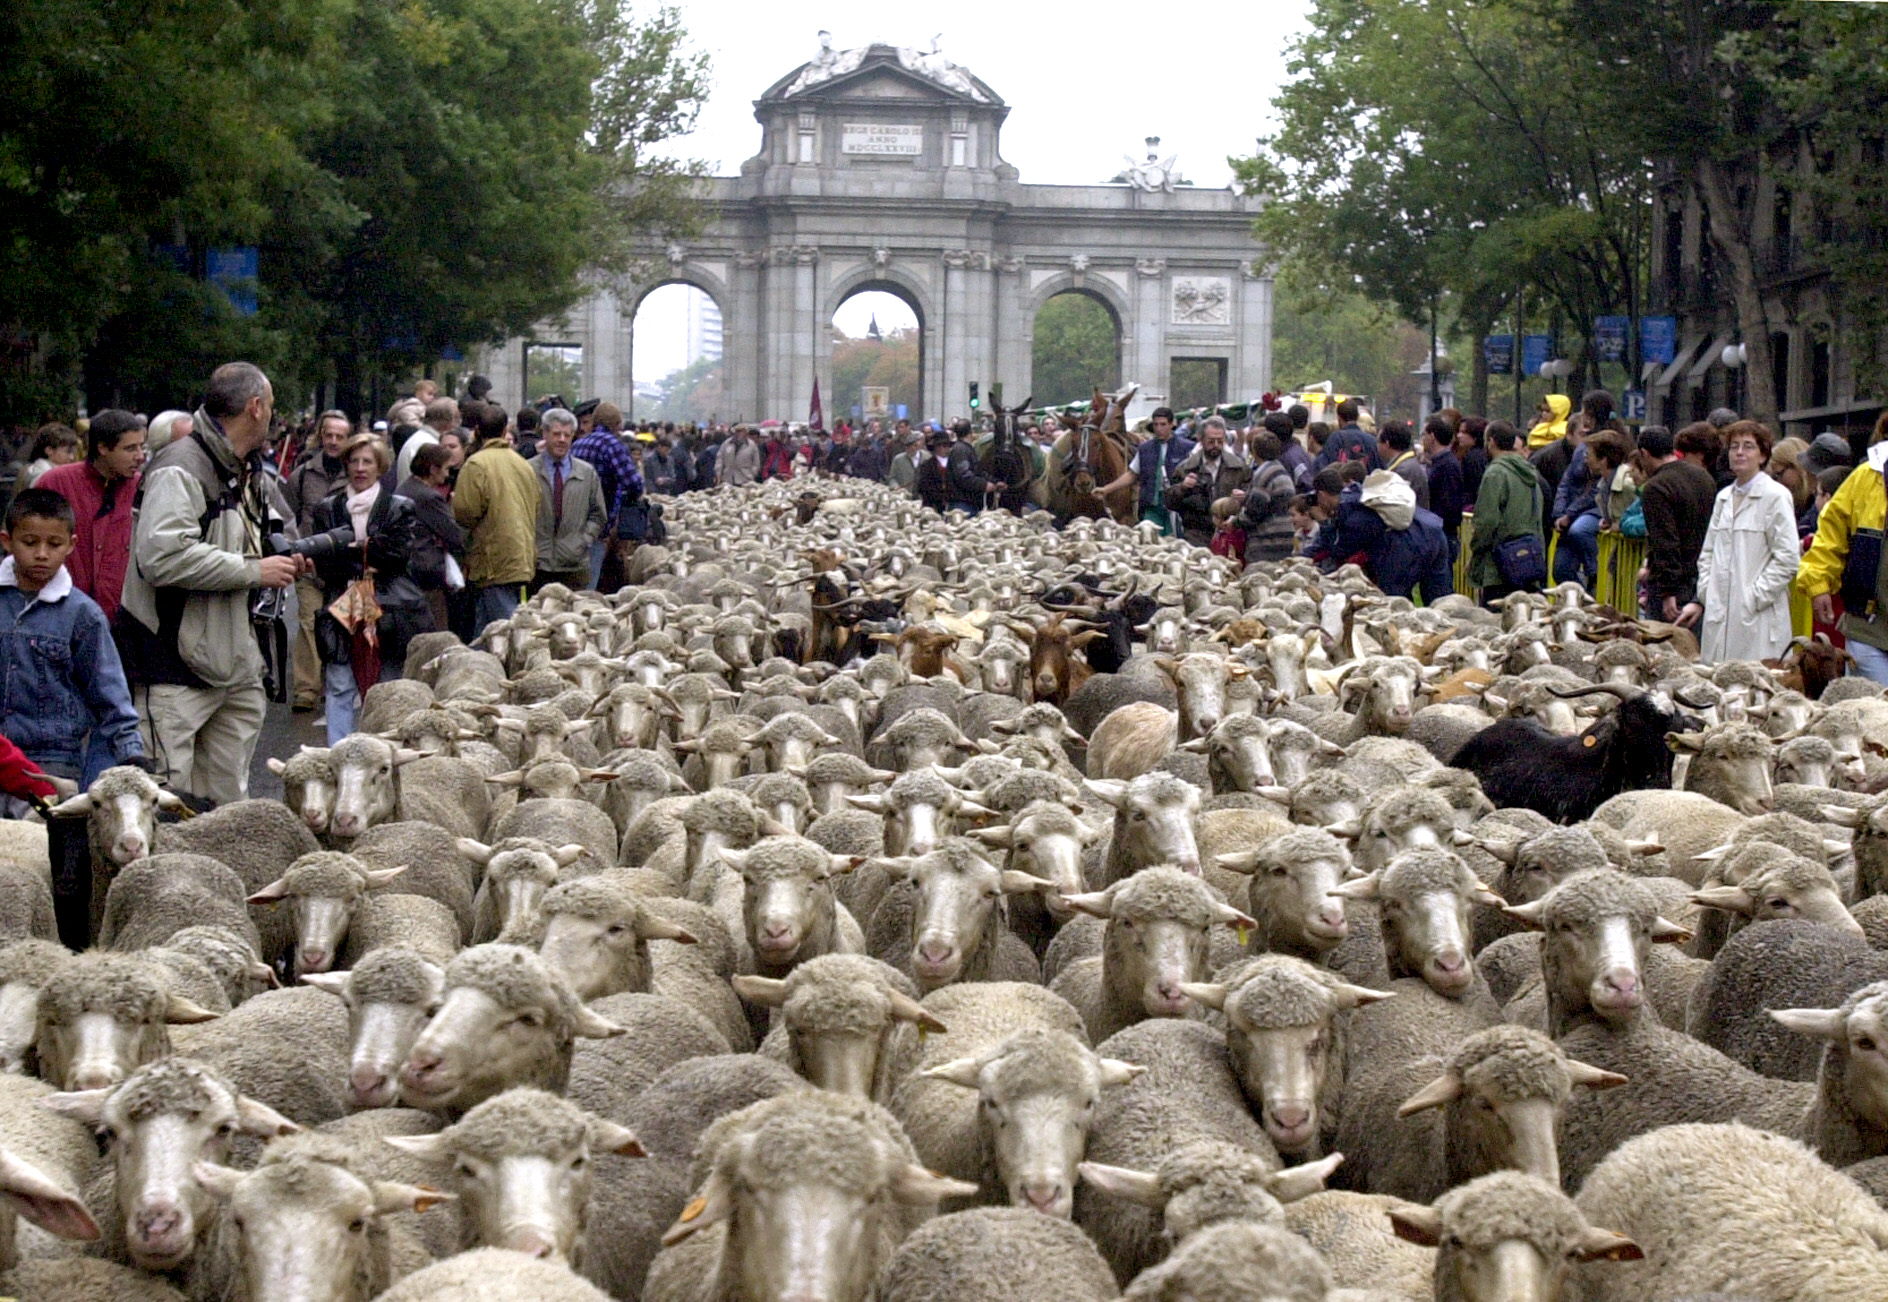 Περισσότερα από 2.000 πρόβατα κατέβασαν κτηνοτρόφοι στη Μαδρίτη